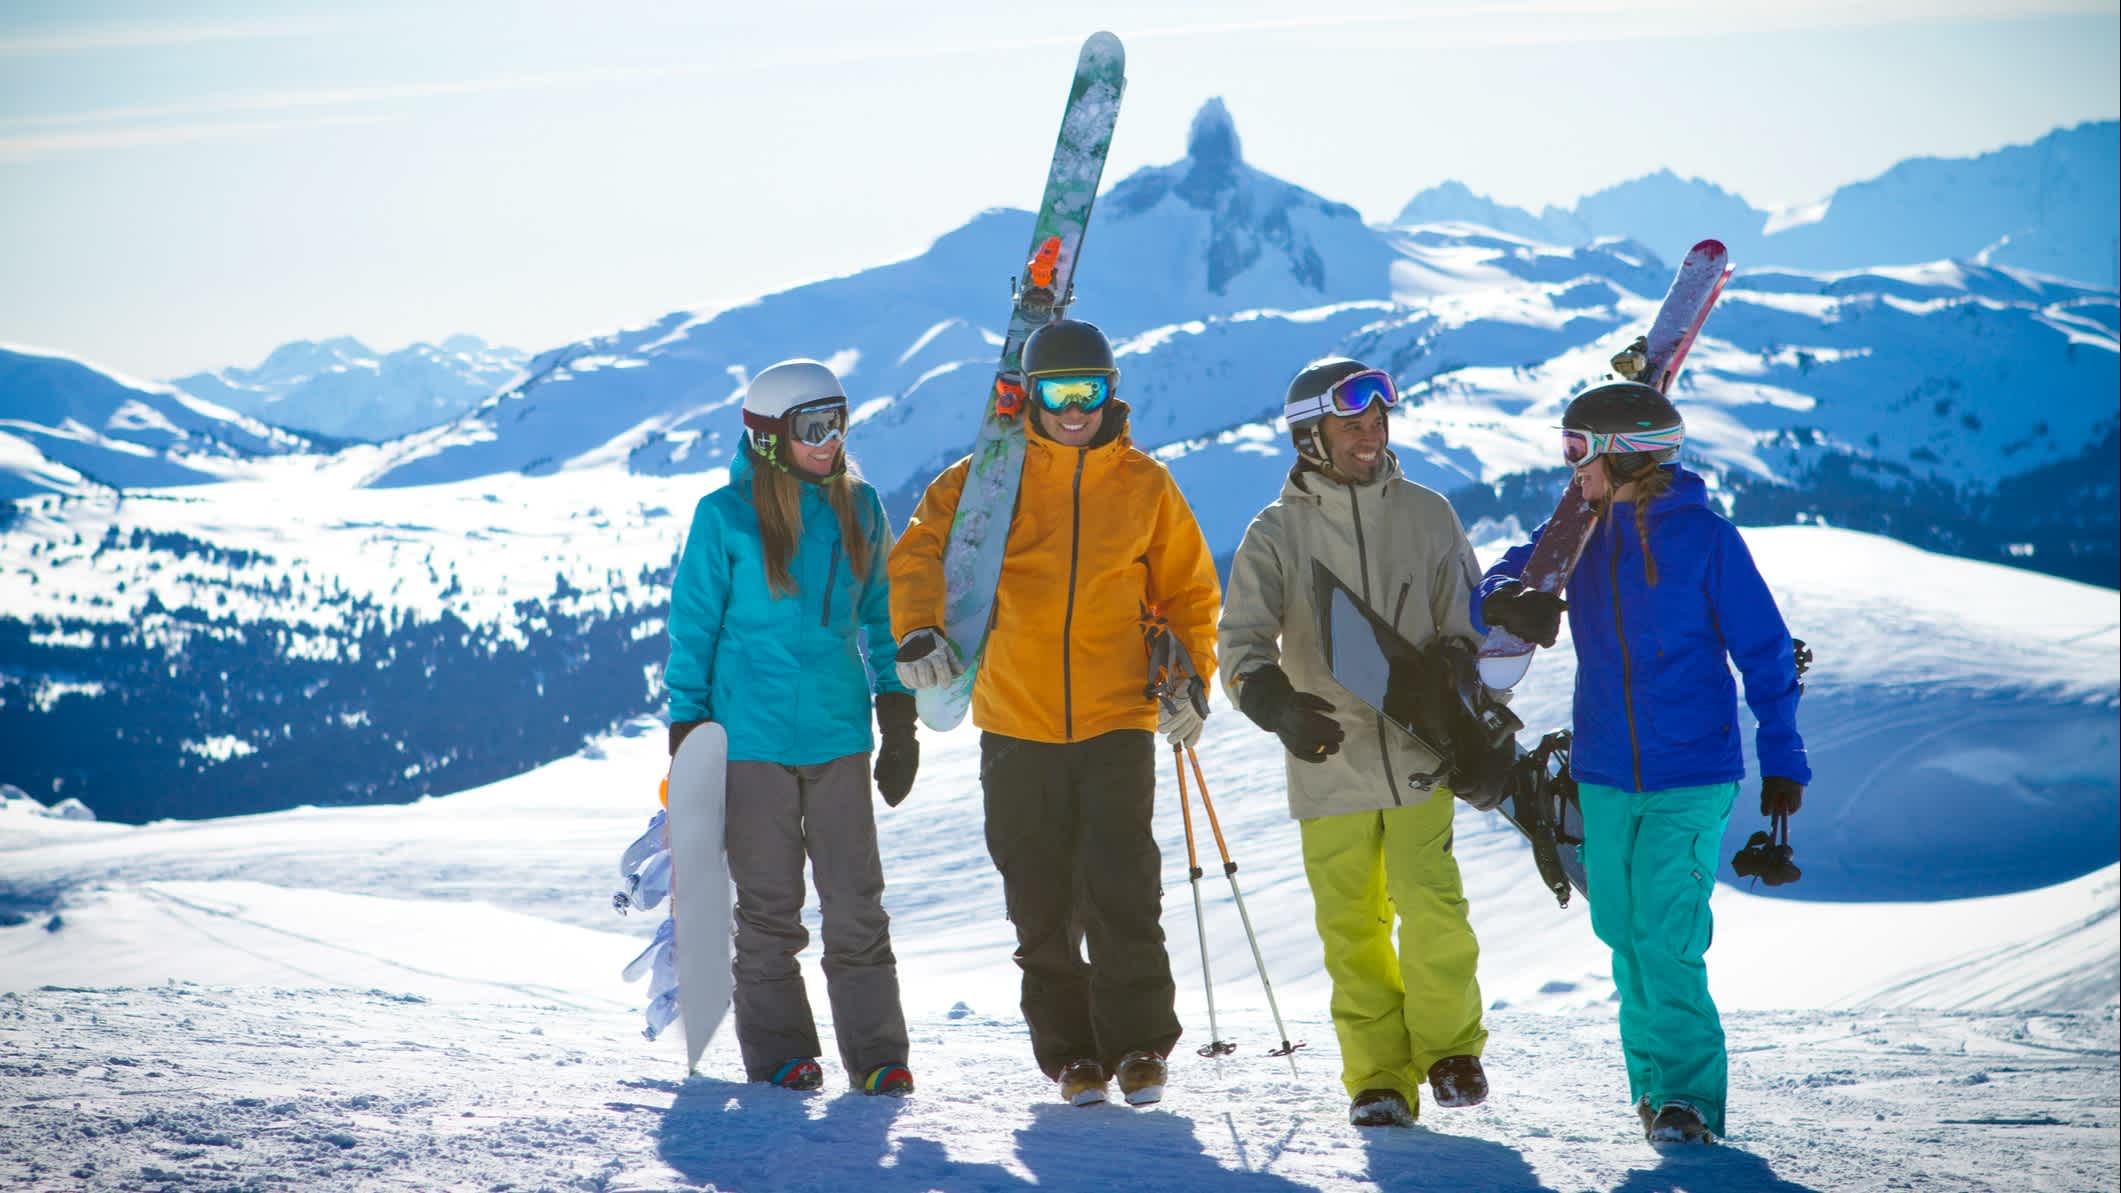 Groupe d'amis faisant du ski et du snowboard dans la station de ski Whistler Blackcomb, Canada.